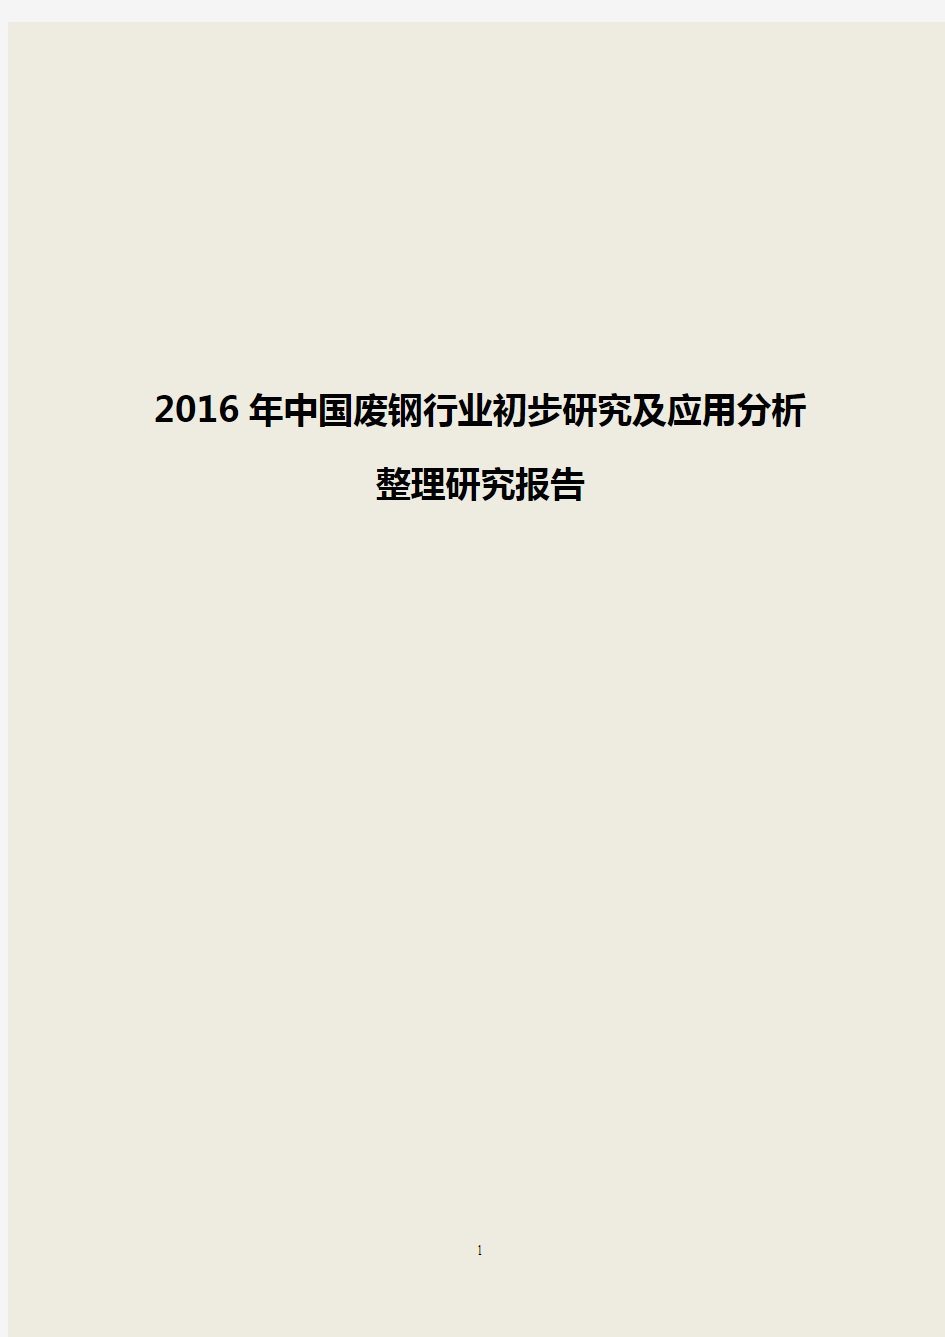 【最新】2016年中国废钢行业初步研究及应用分析整理研究报告